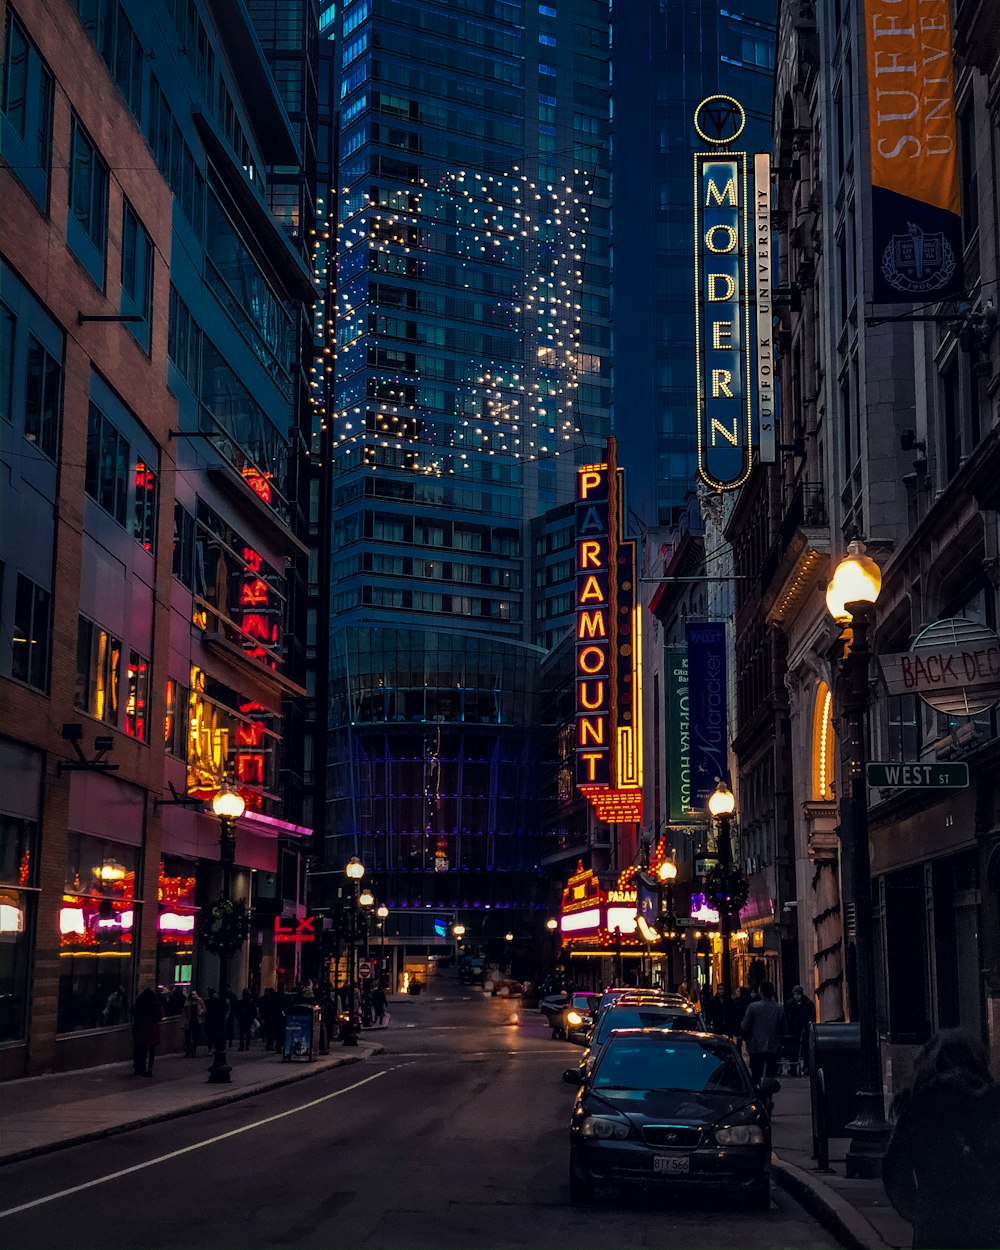 carros na estrada entre edifícios altos durante a noite